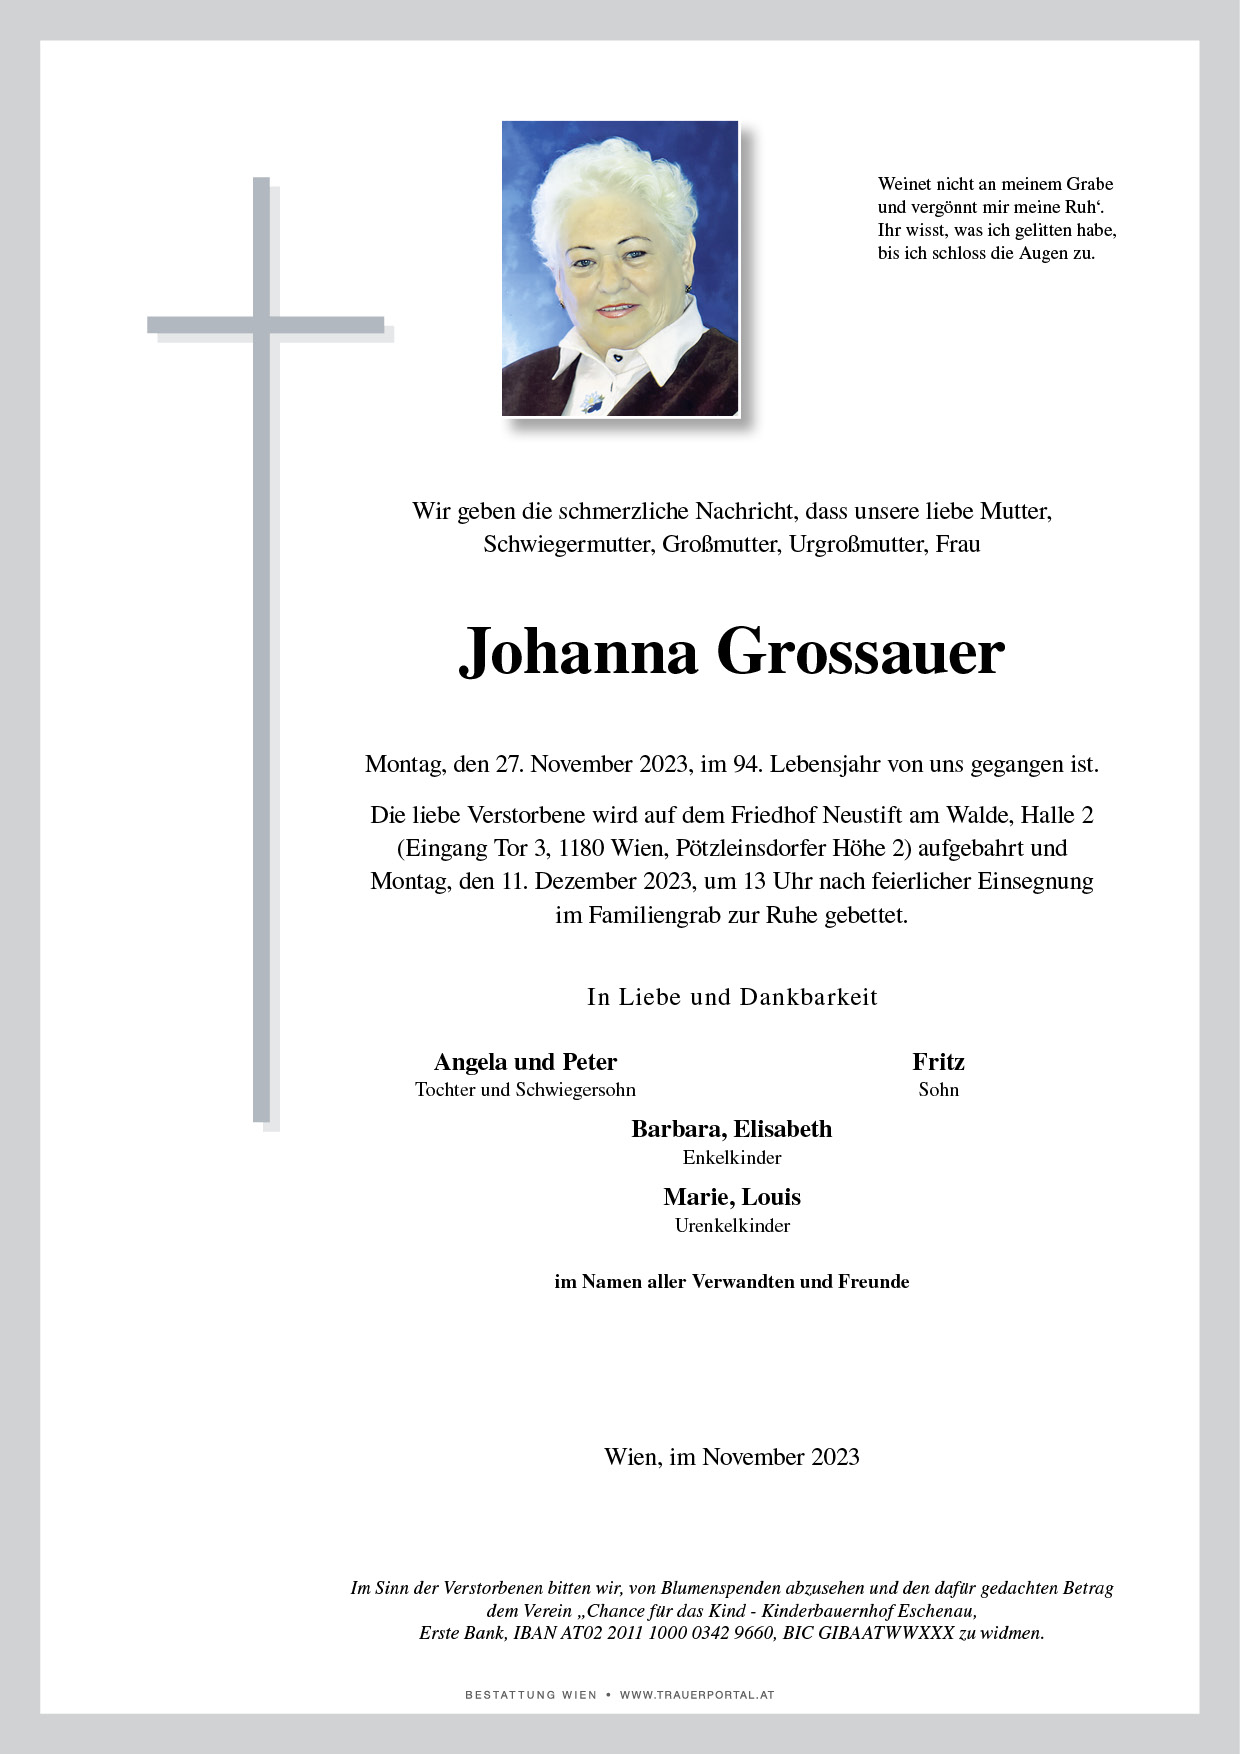 Johanna Grossauer